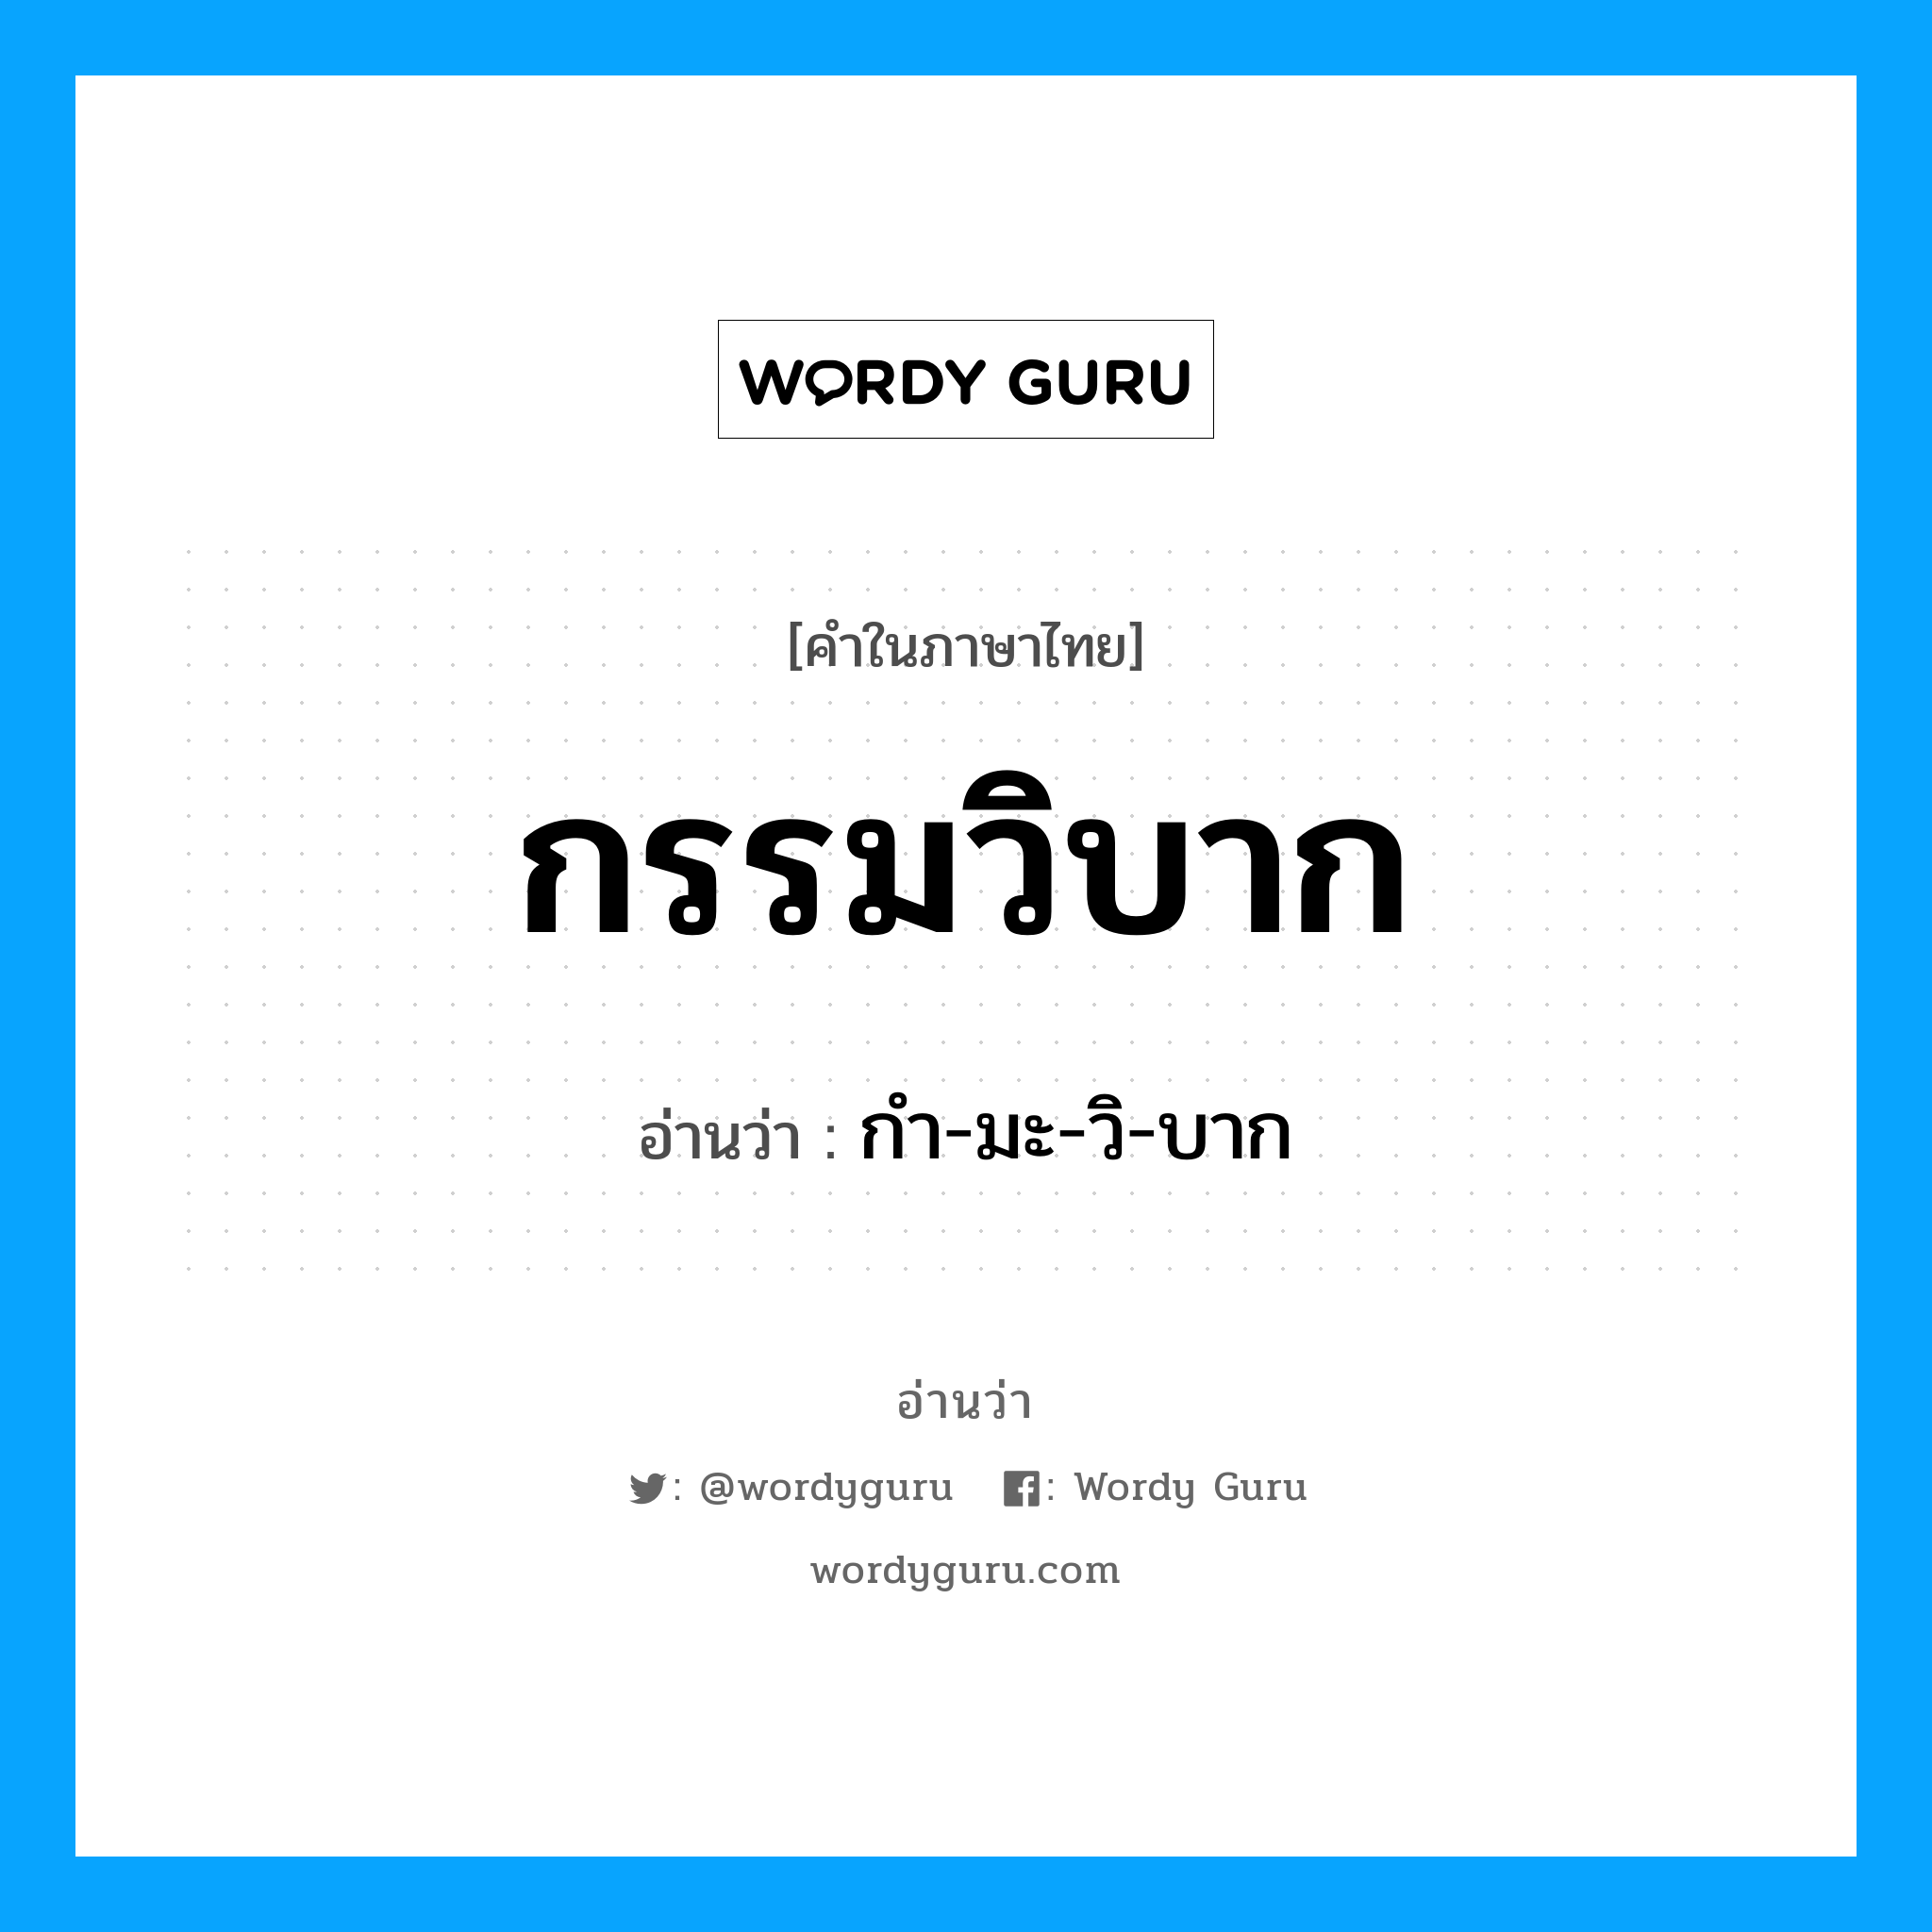 กํา-มะ-วิ-บาก เป็นคำอ่านของคำไหน?, คำในภาษาไทย กํา-มะ-วิ-บาก อ่านว่า กรรมวิบาก